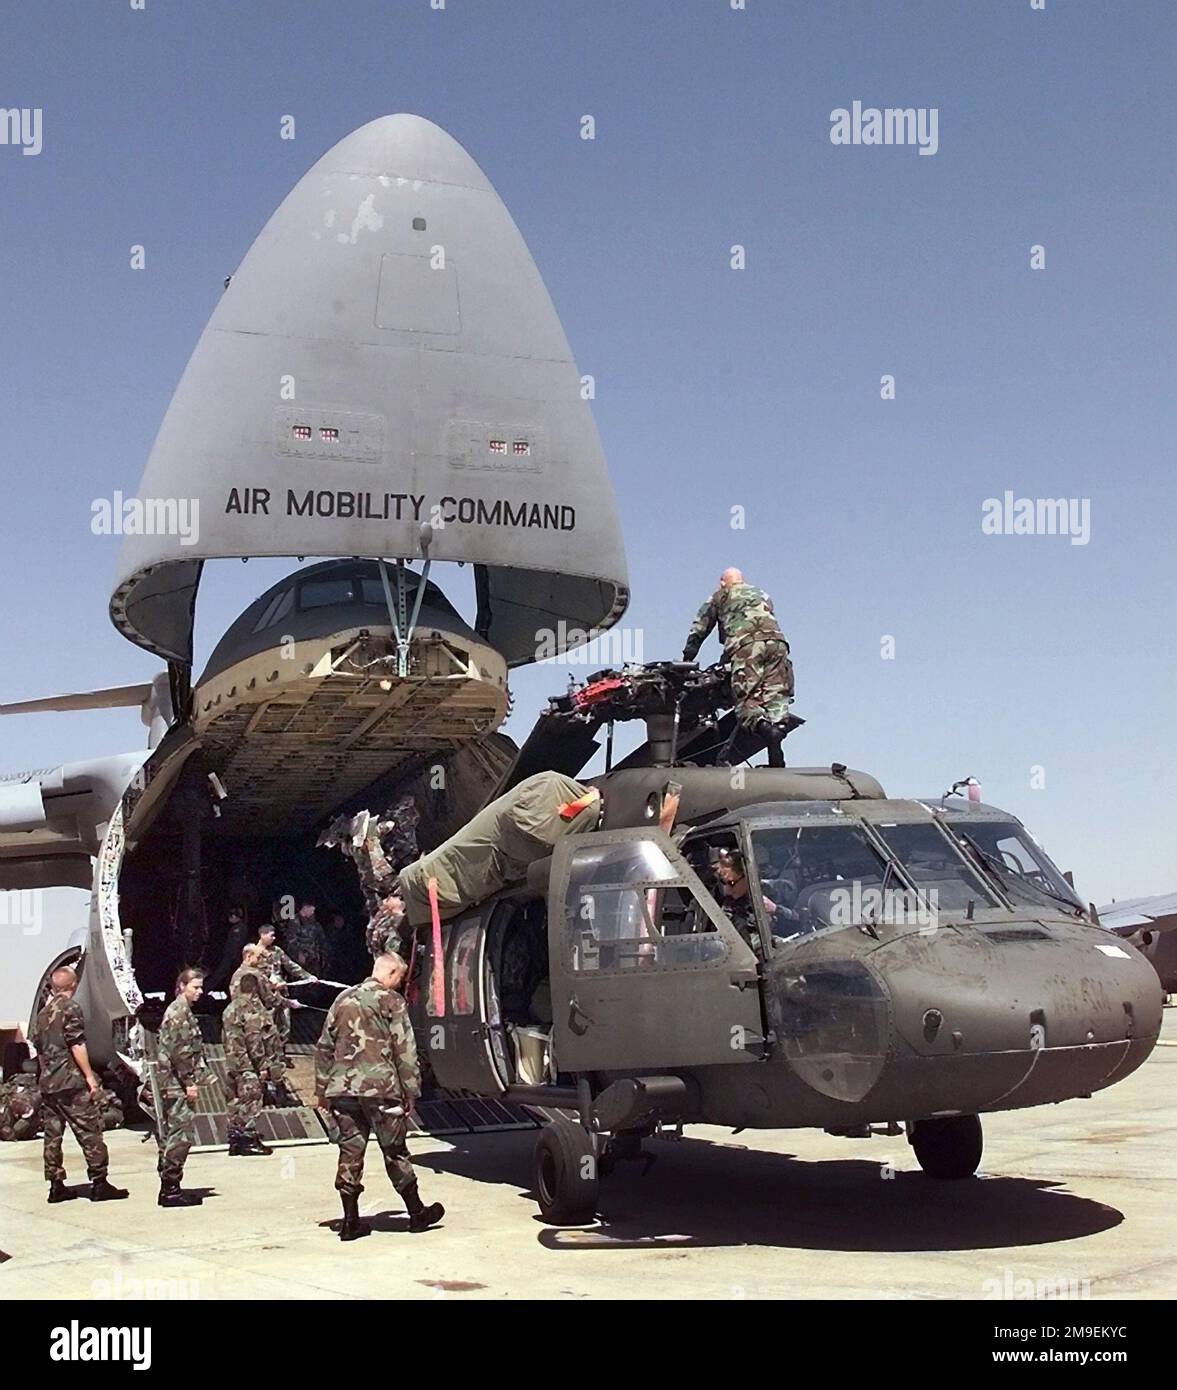 À la base aérienne du Caire Ouest, en Égypte, le personnel de l'armée aide à décharger un hélicoptère UH-60A Blackhawk d'une Galaxie de la Force aérienne C-5. Le personnel de Blackhawk et de l'Armée est arrivé en Égypte pour l'exercice BRIGHT STAR 99/00. BRIGHT STAR offre l'occasion de renforcer la coopération militaire avec les États-Unis, l'Égypte et d'autres pays de la coalition, en renforçant l'engagement conjoint en faveur de la stabilité régionale et d'autres intérêts mutuels. Les forces militaires à tous les niveaux ont les occasions uniques de renforcer les relations militaires et de se familiariser avec le personnel, l'équipement et les tactiques des forces de la coalition. Objet O Banque D'Images